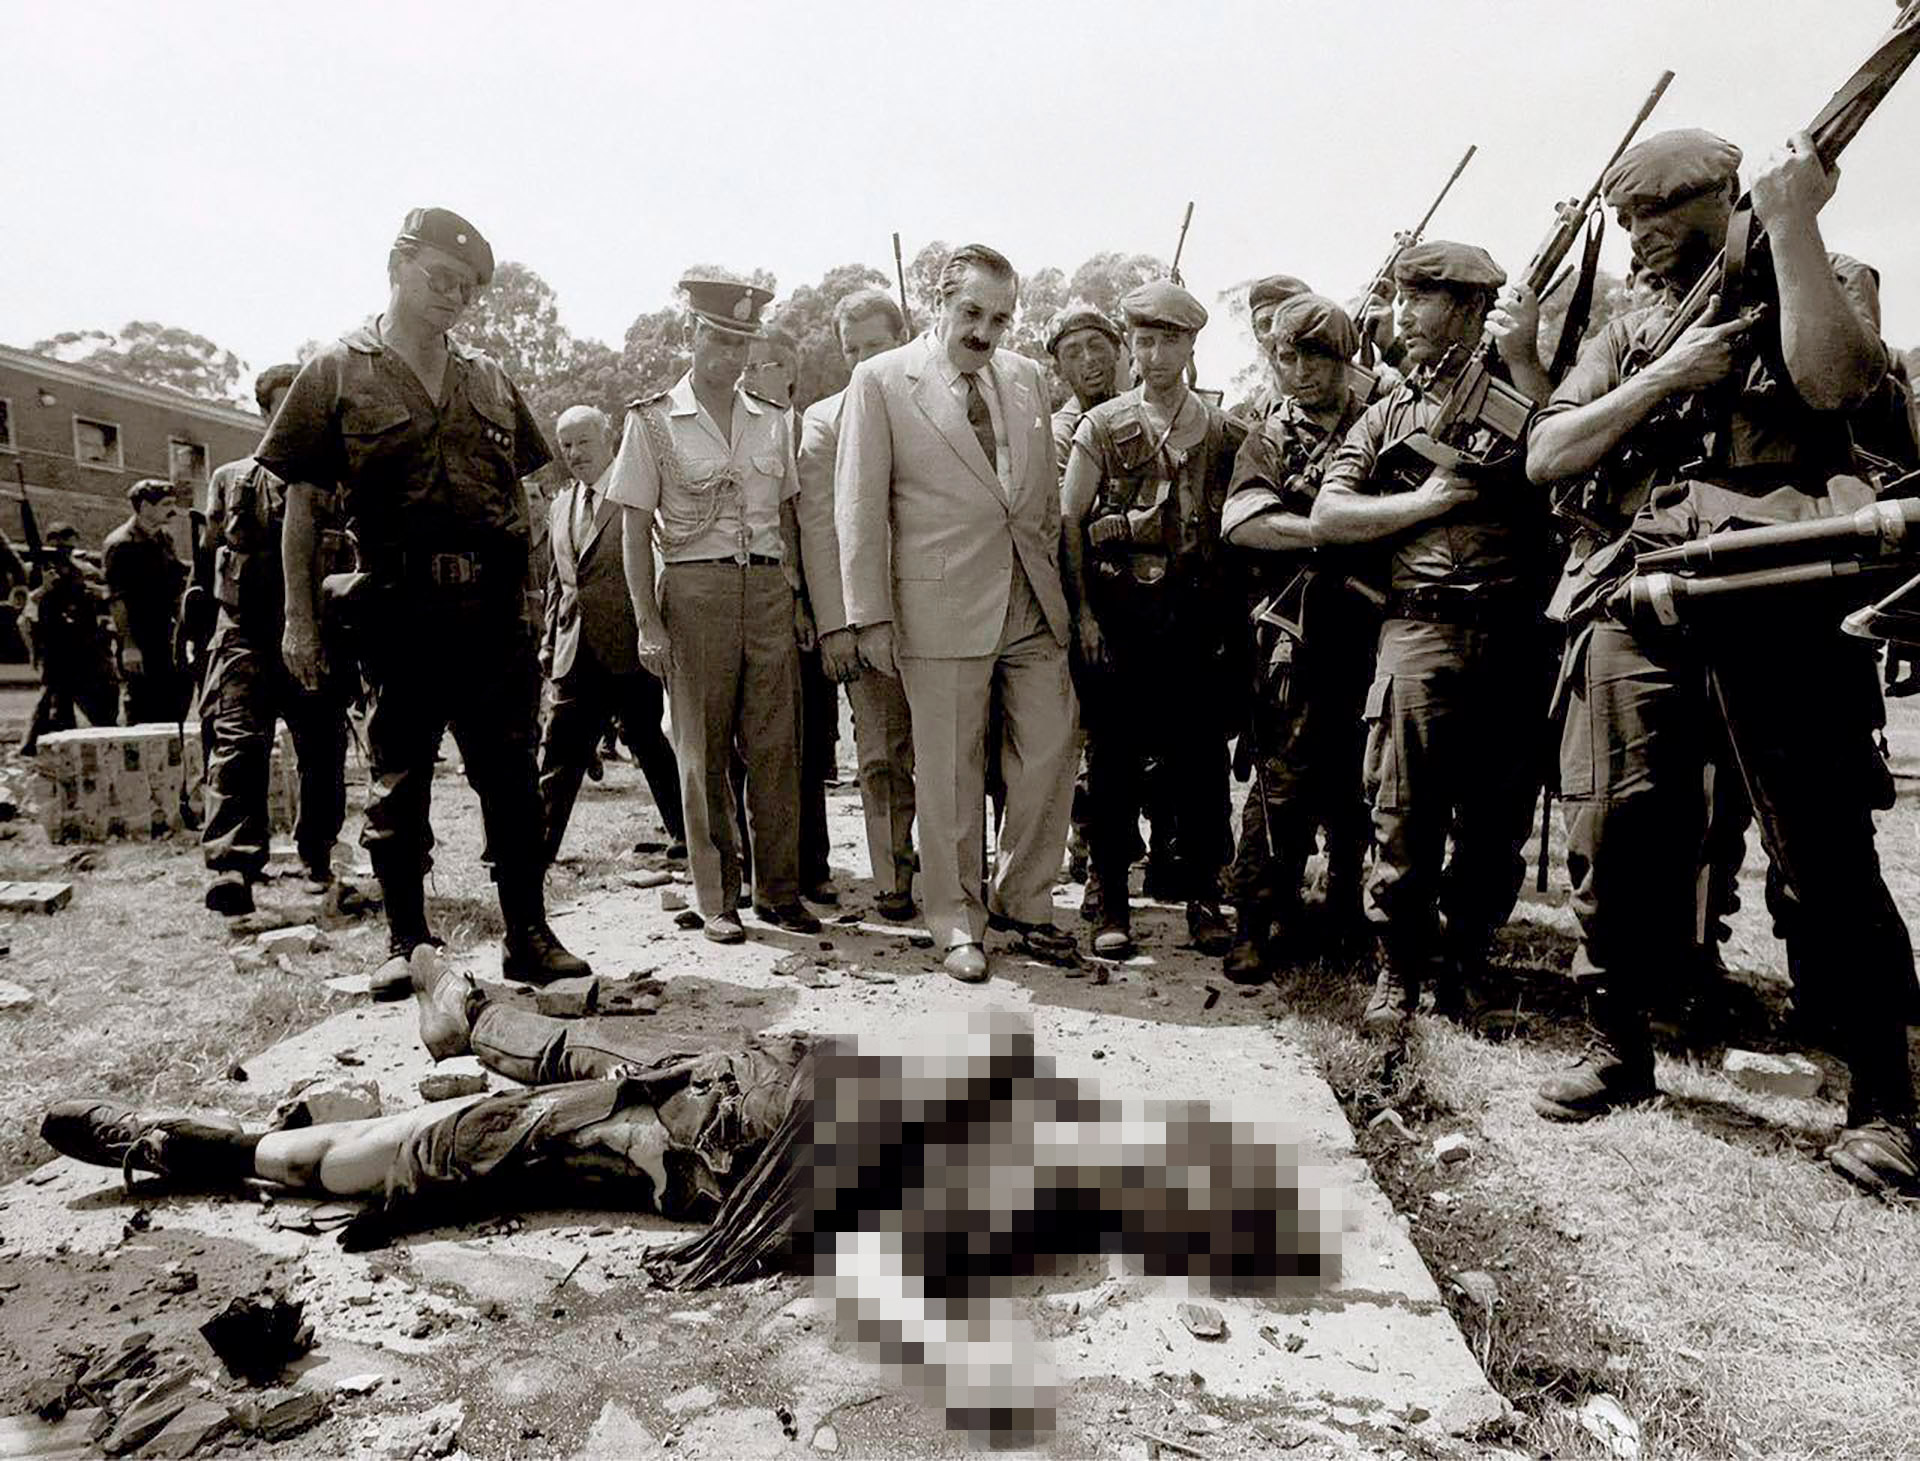 El presidente Raúl Alfonsín frente al cuerpo de uno de los guerrilleros del MTP luego del intento de copamiento del Regimiento de La Tablada (Víctor Buggé)